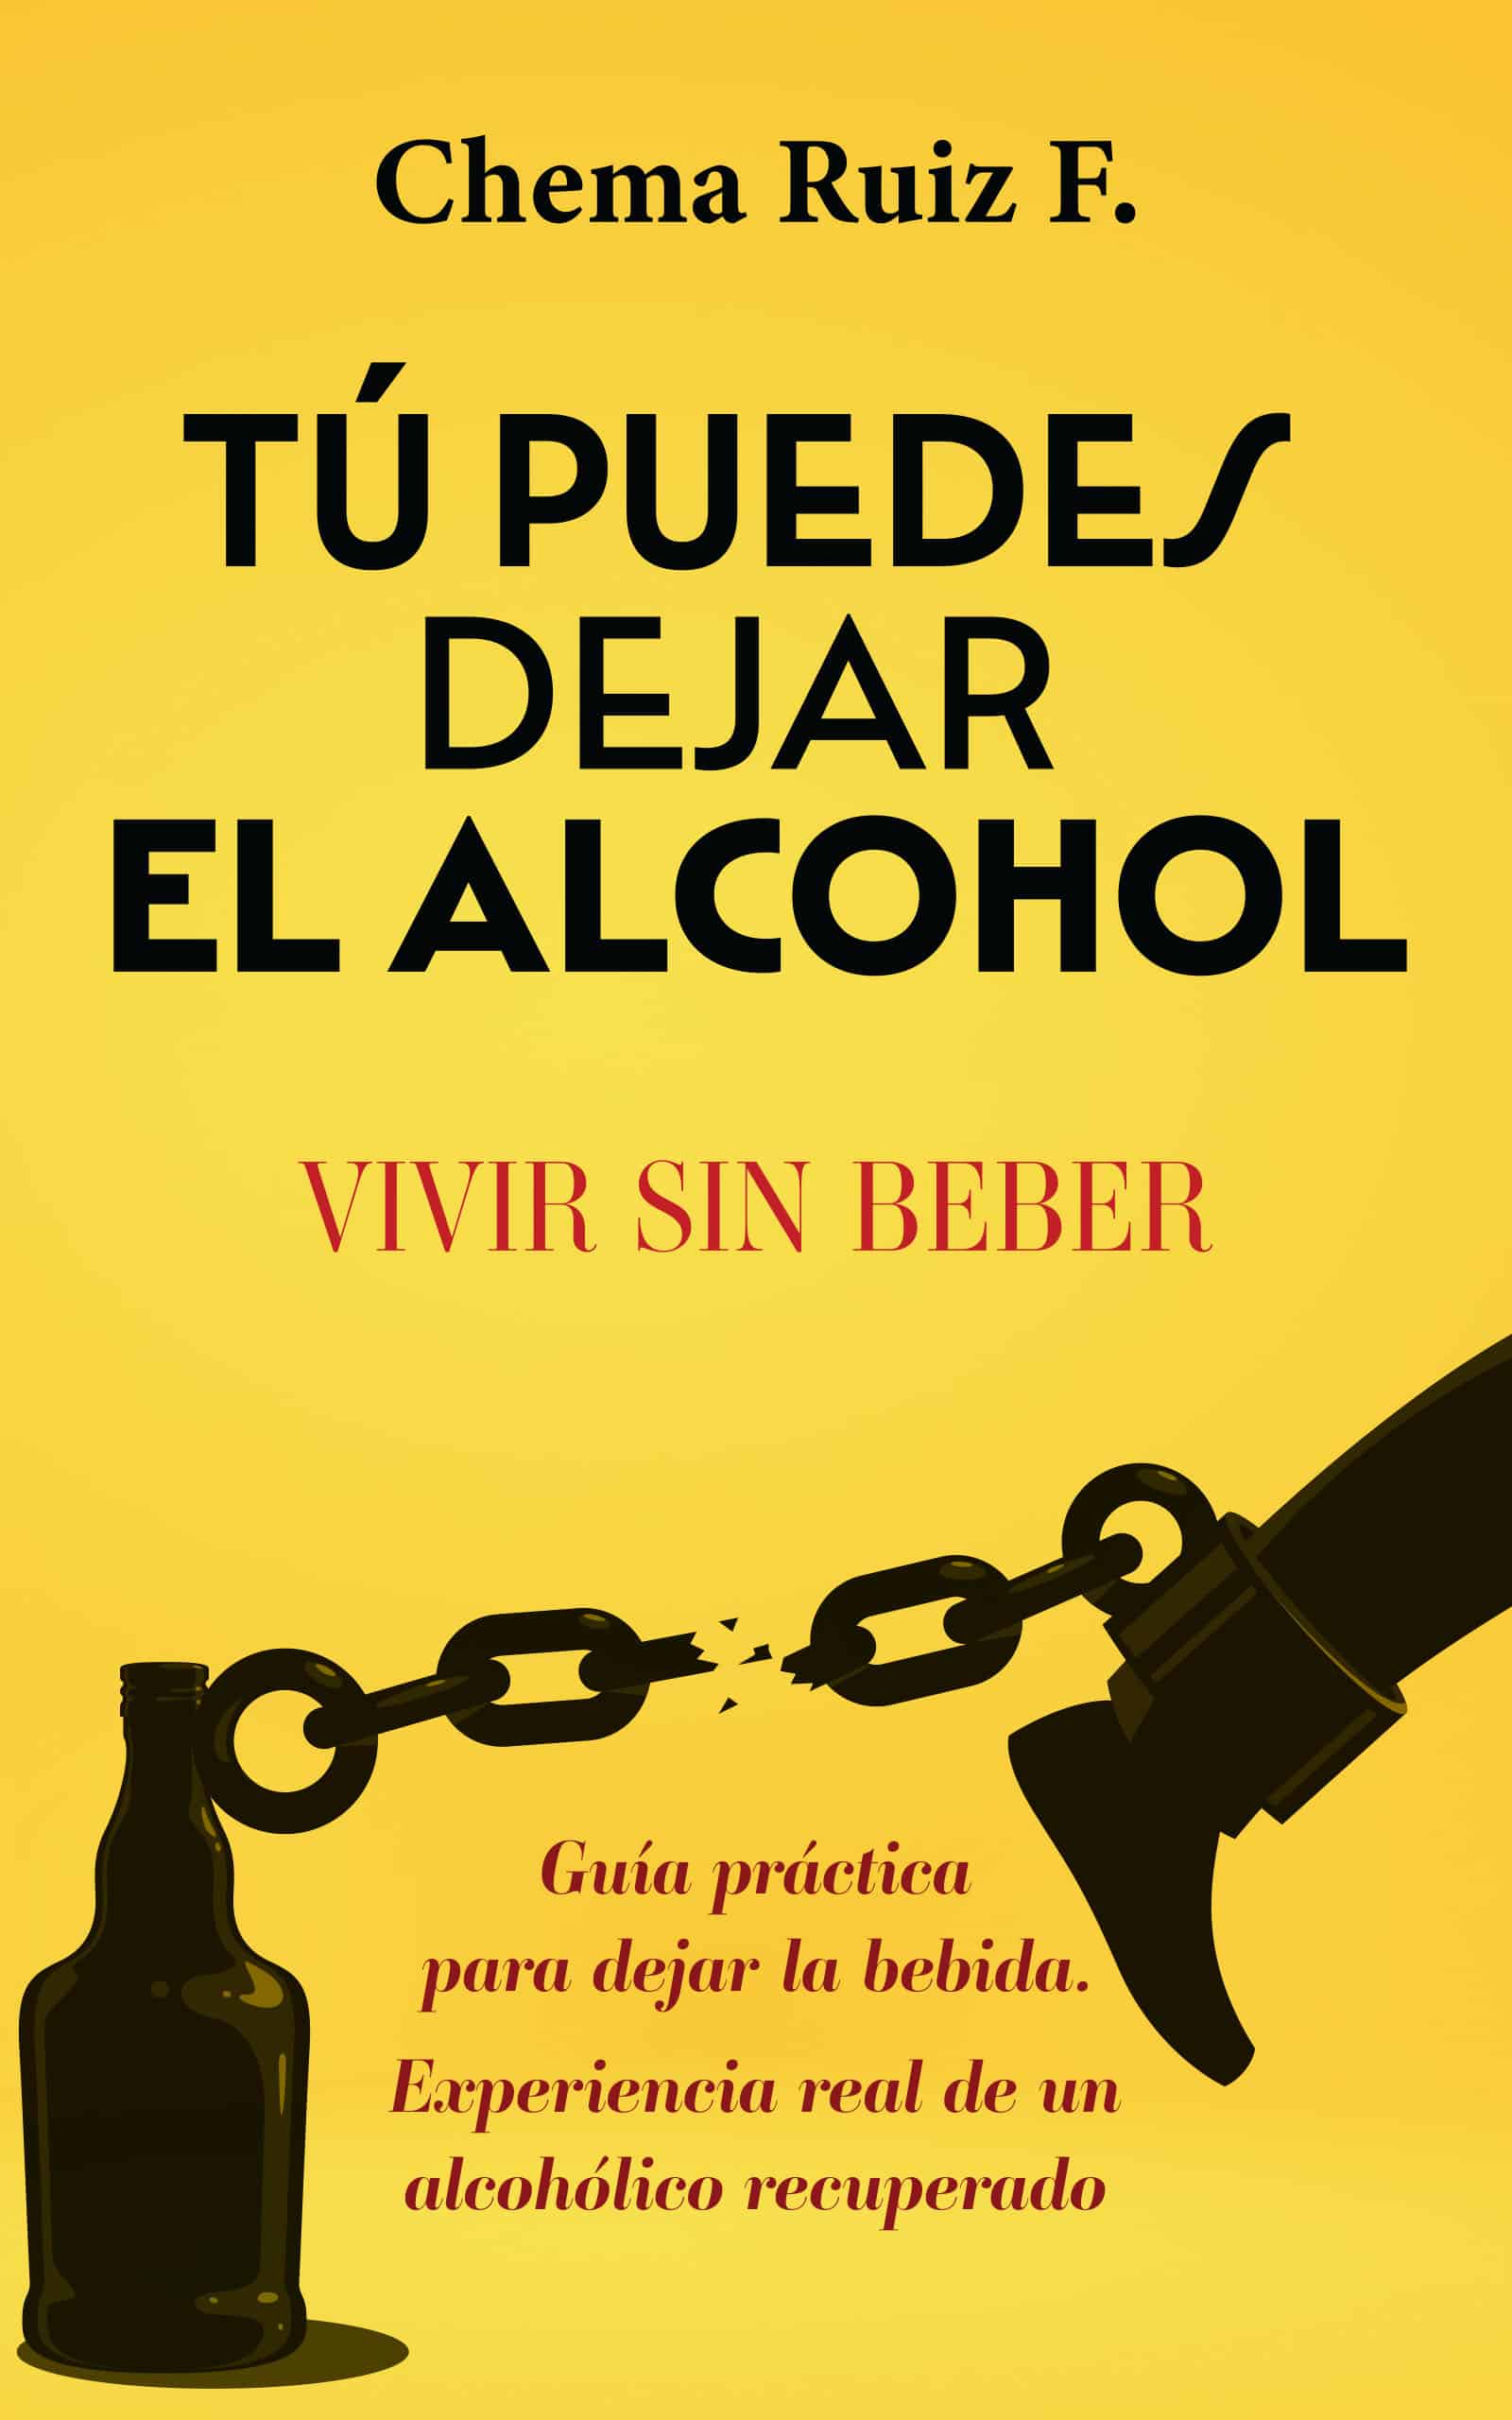 Tú puedes dejar el alcohol, de Chema Ruiz F